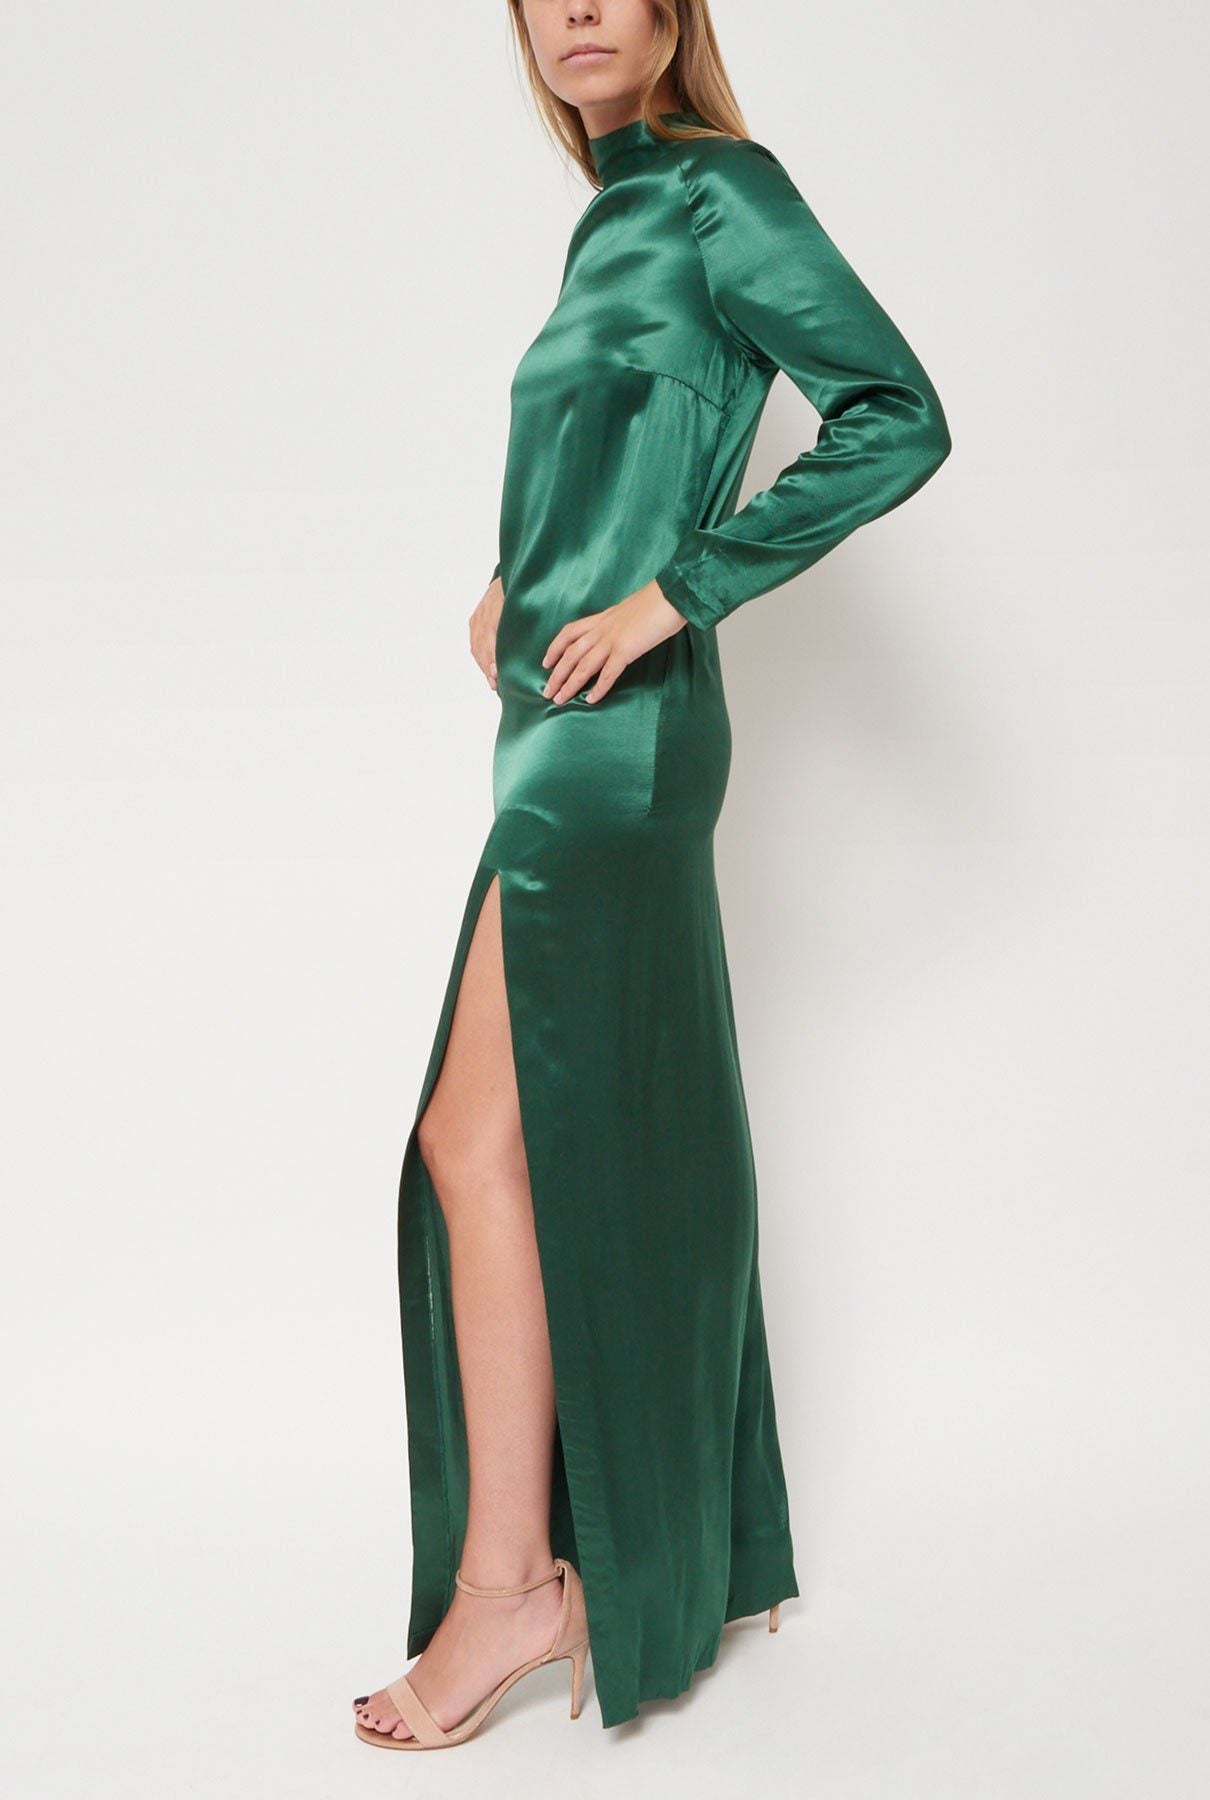 Vestido verde largo raso Dress Leandro Cano 